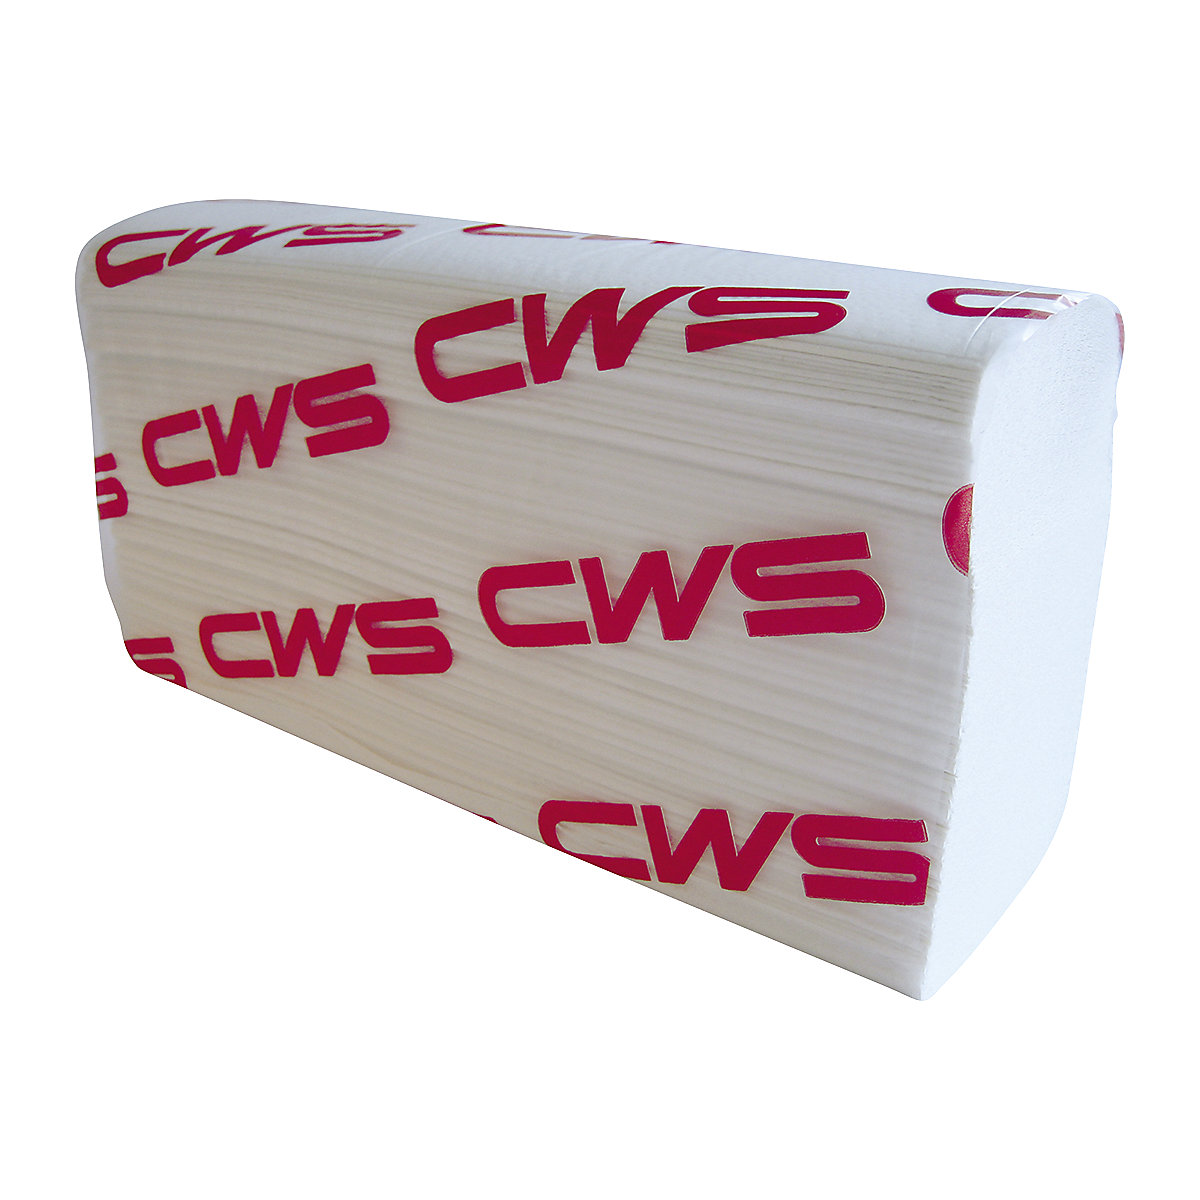 Faltpapierhandtuch Multifold CWS